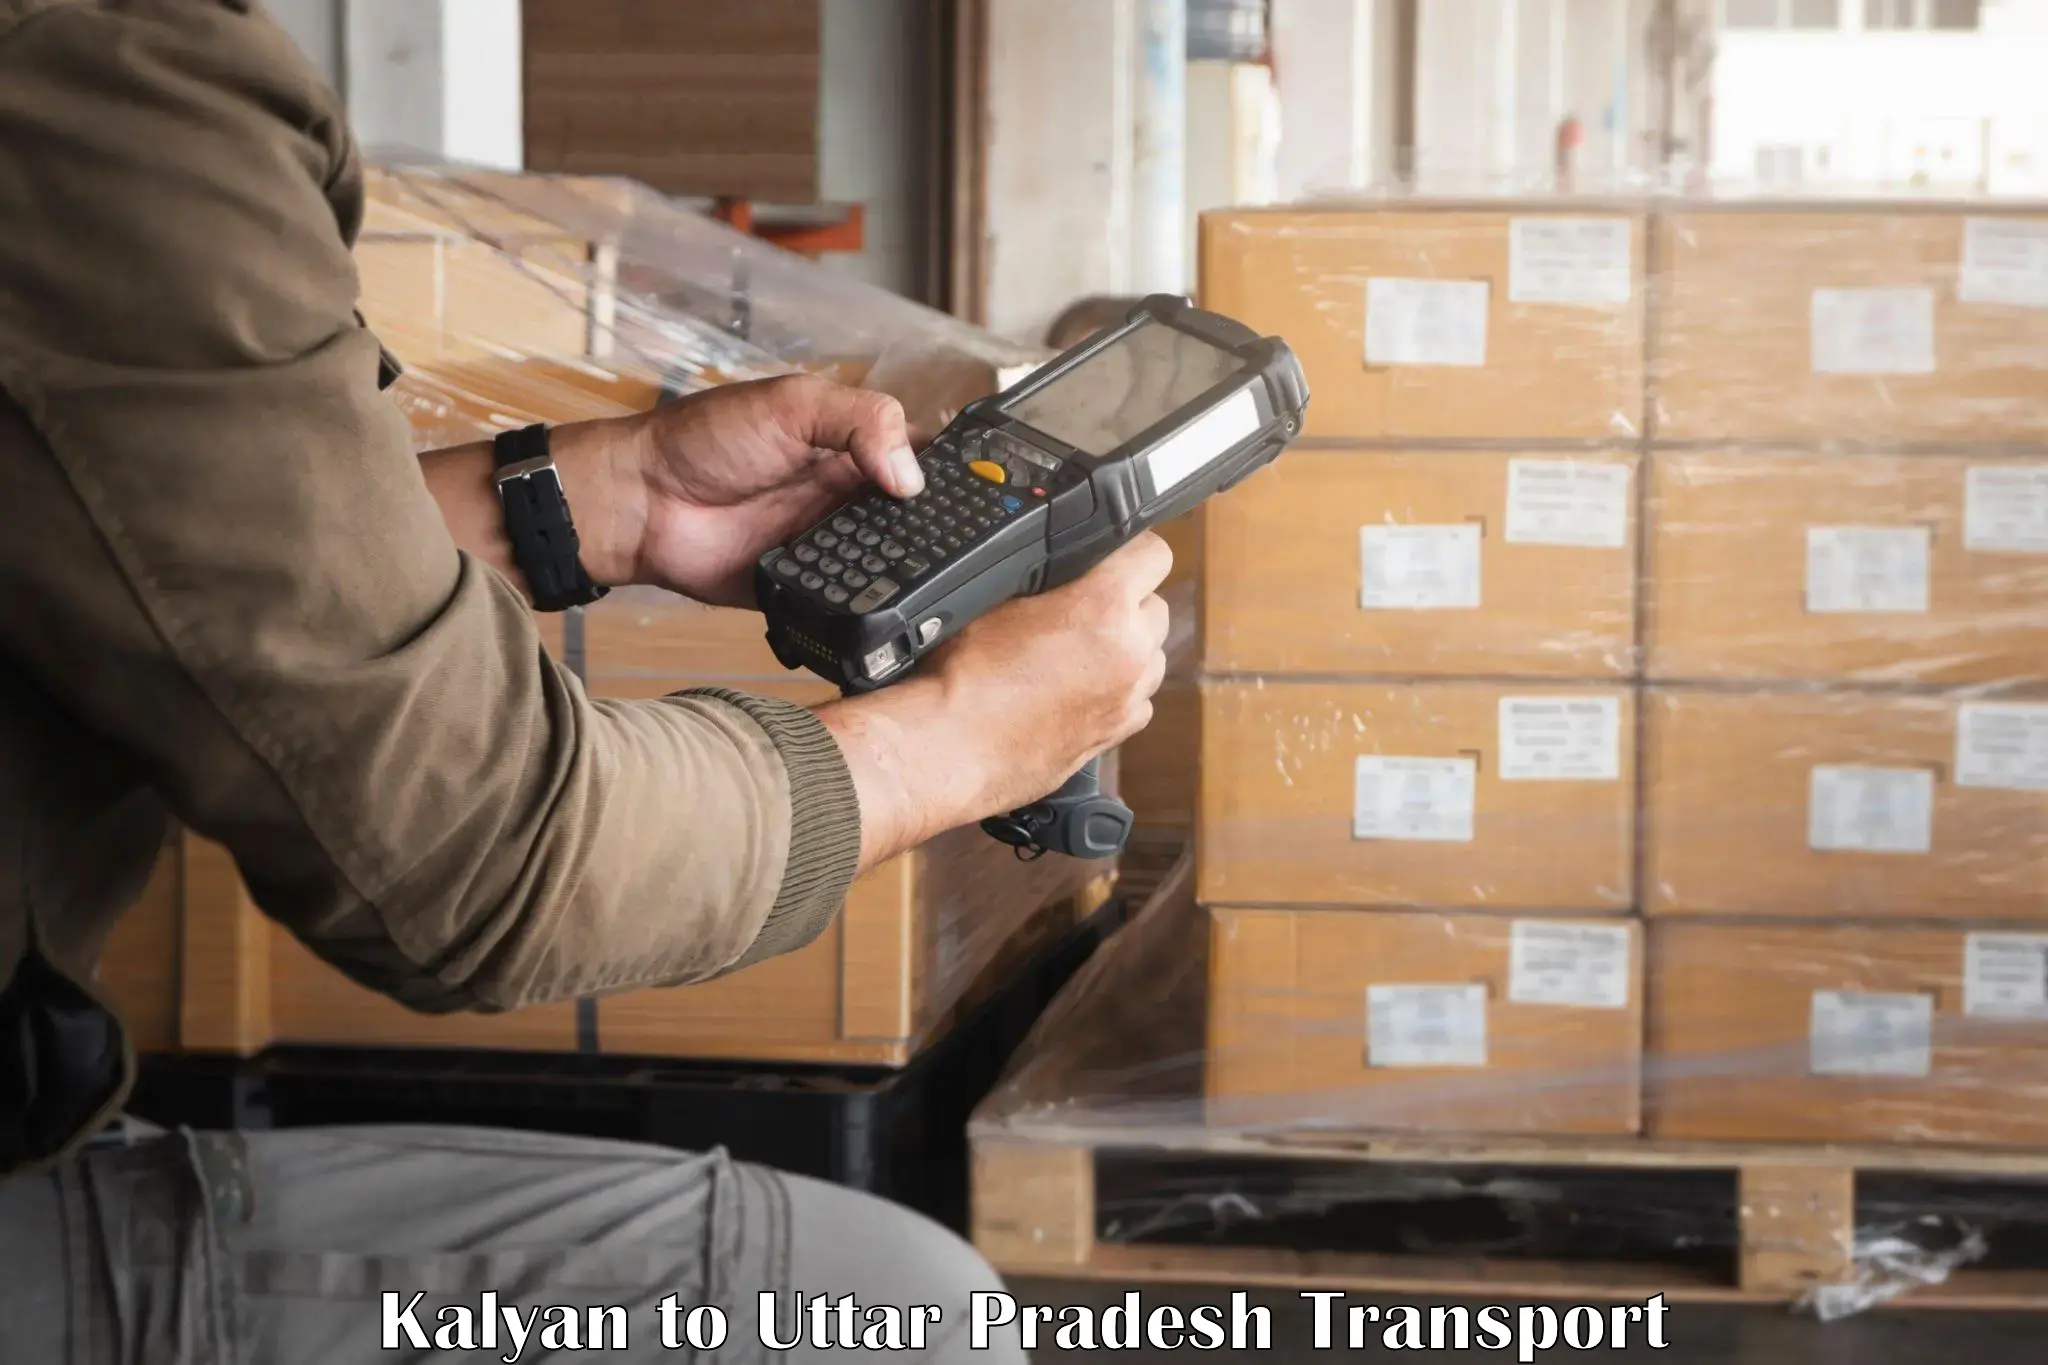 Container transport service Kalyan to Saifai